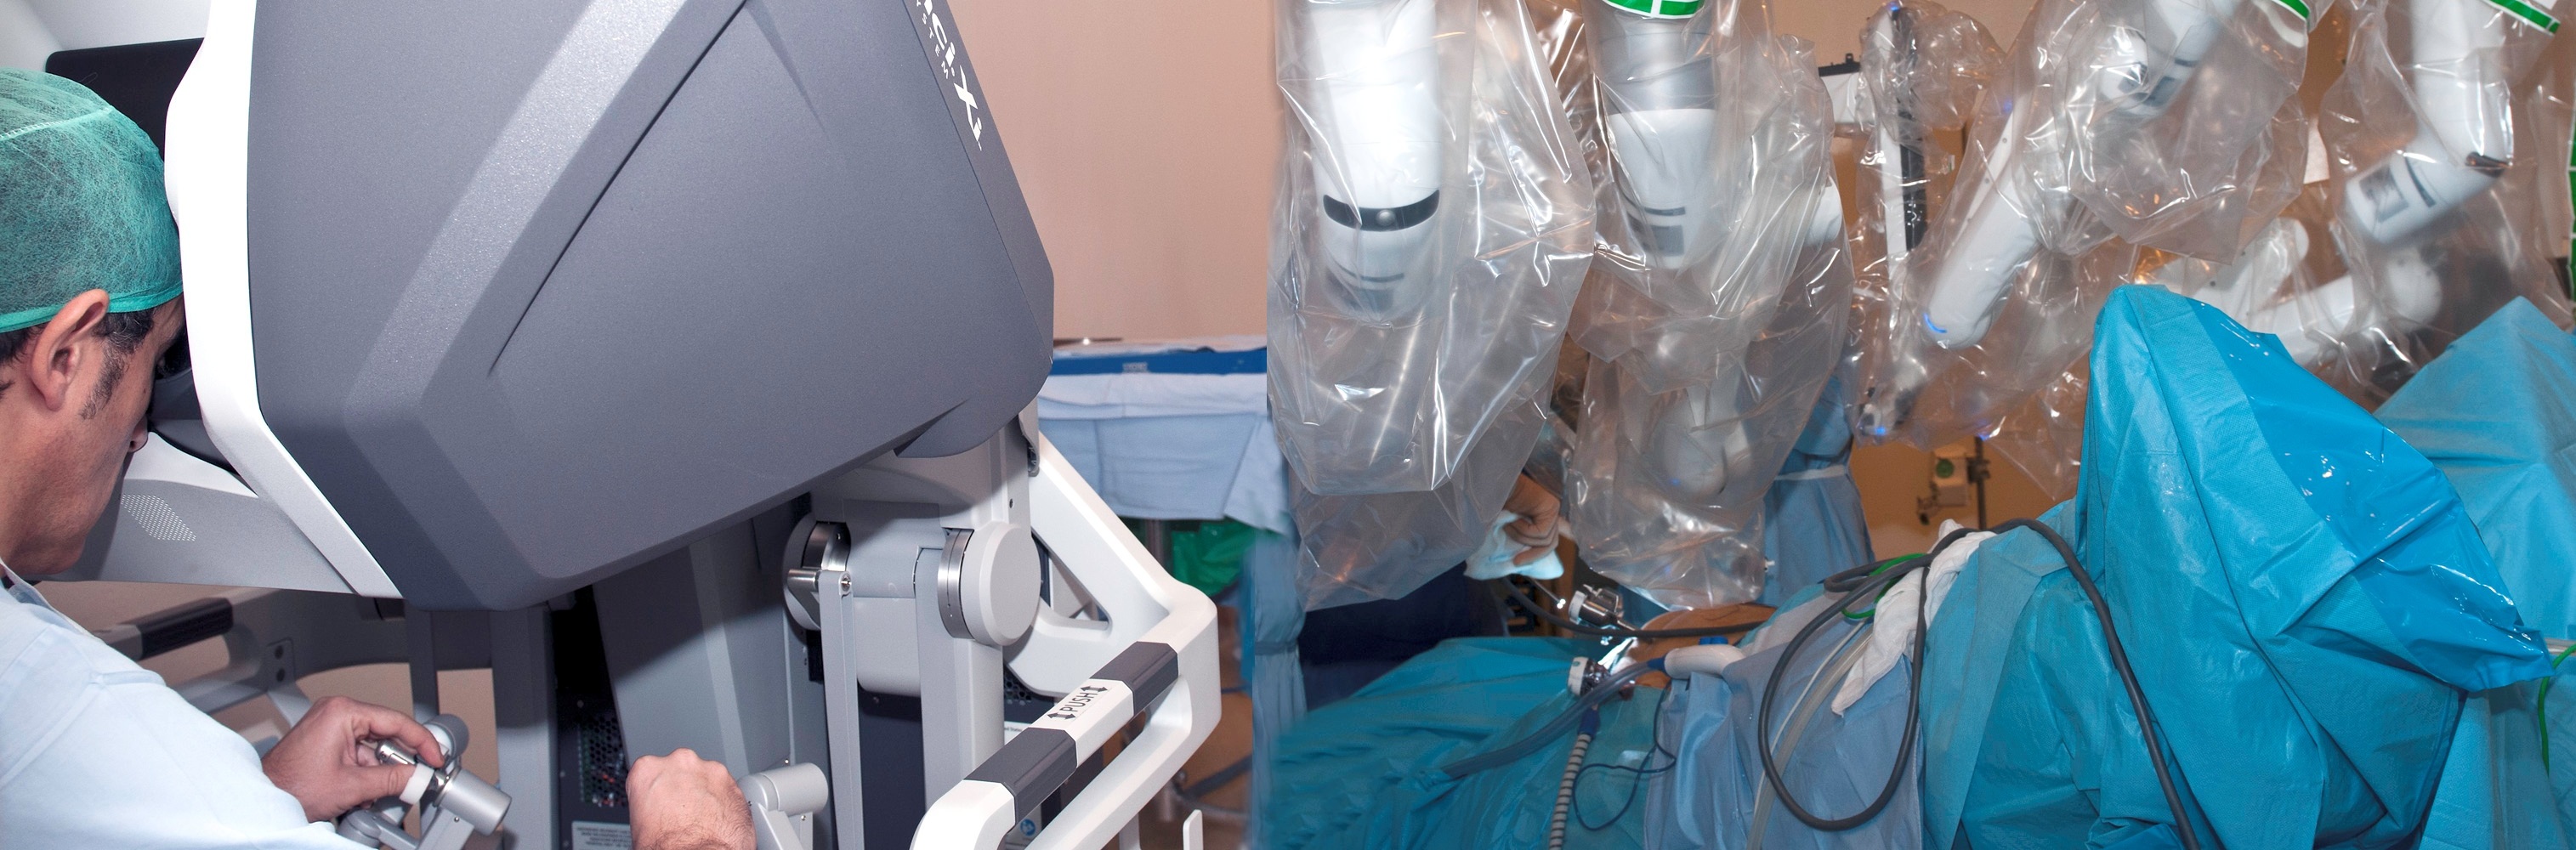 La primera intervención con cirugía robótica en Galicia, realizada en el Hospital San Rafael de La Coruña